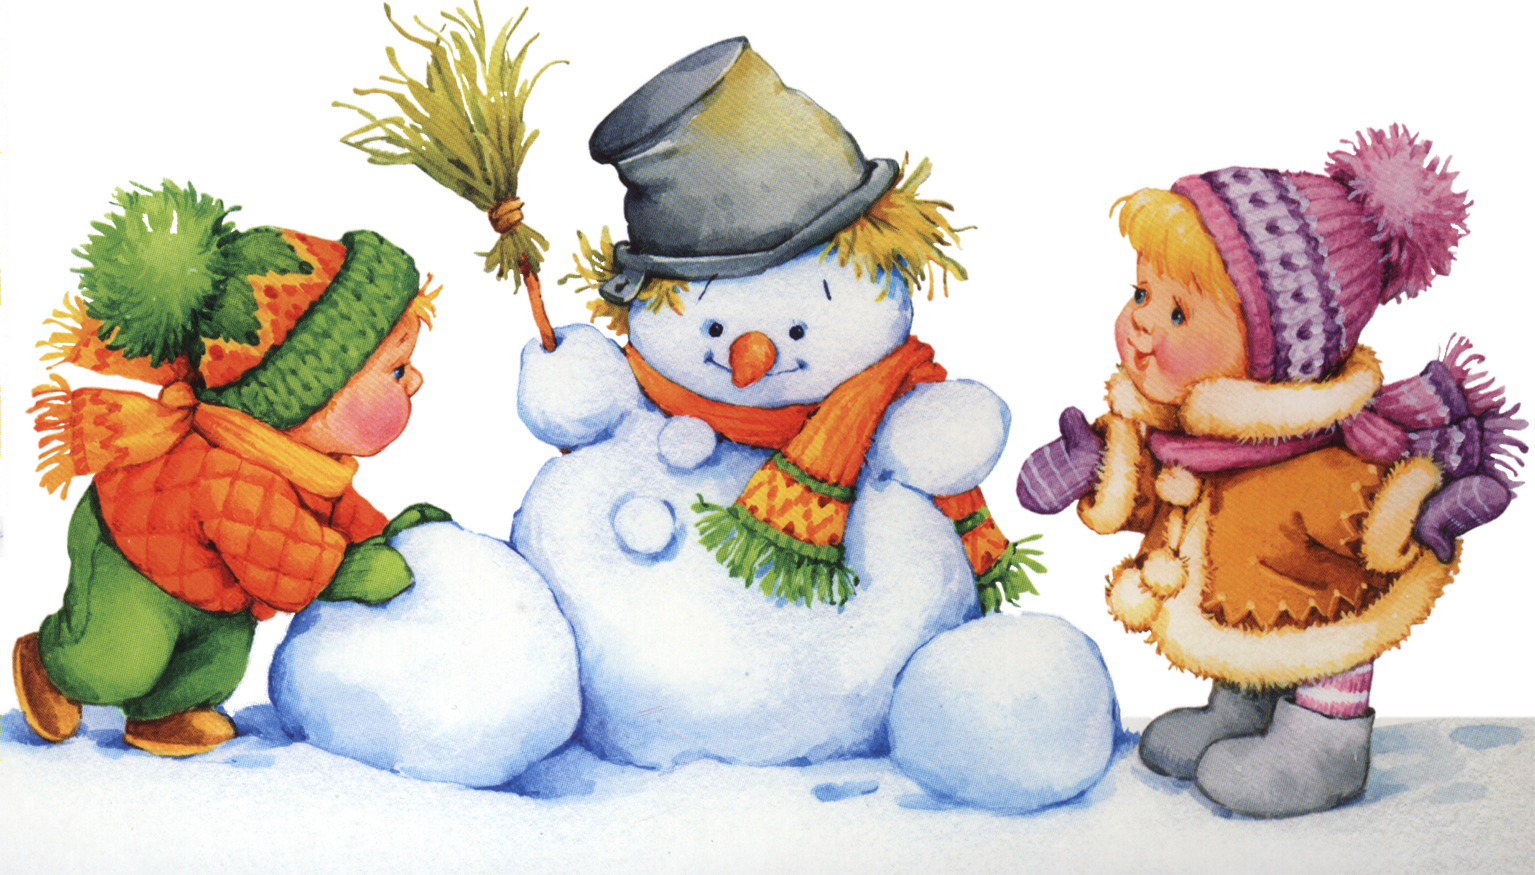 Картинка зимы для детей в детском саду. Дети лепят снеговика. Снеговик на прозрачном фоне. Картинка Снеговик для детей в детском саду. Зима для детей.